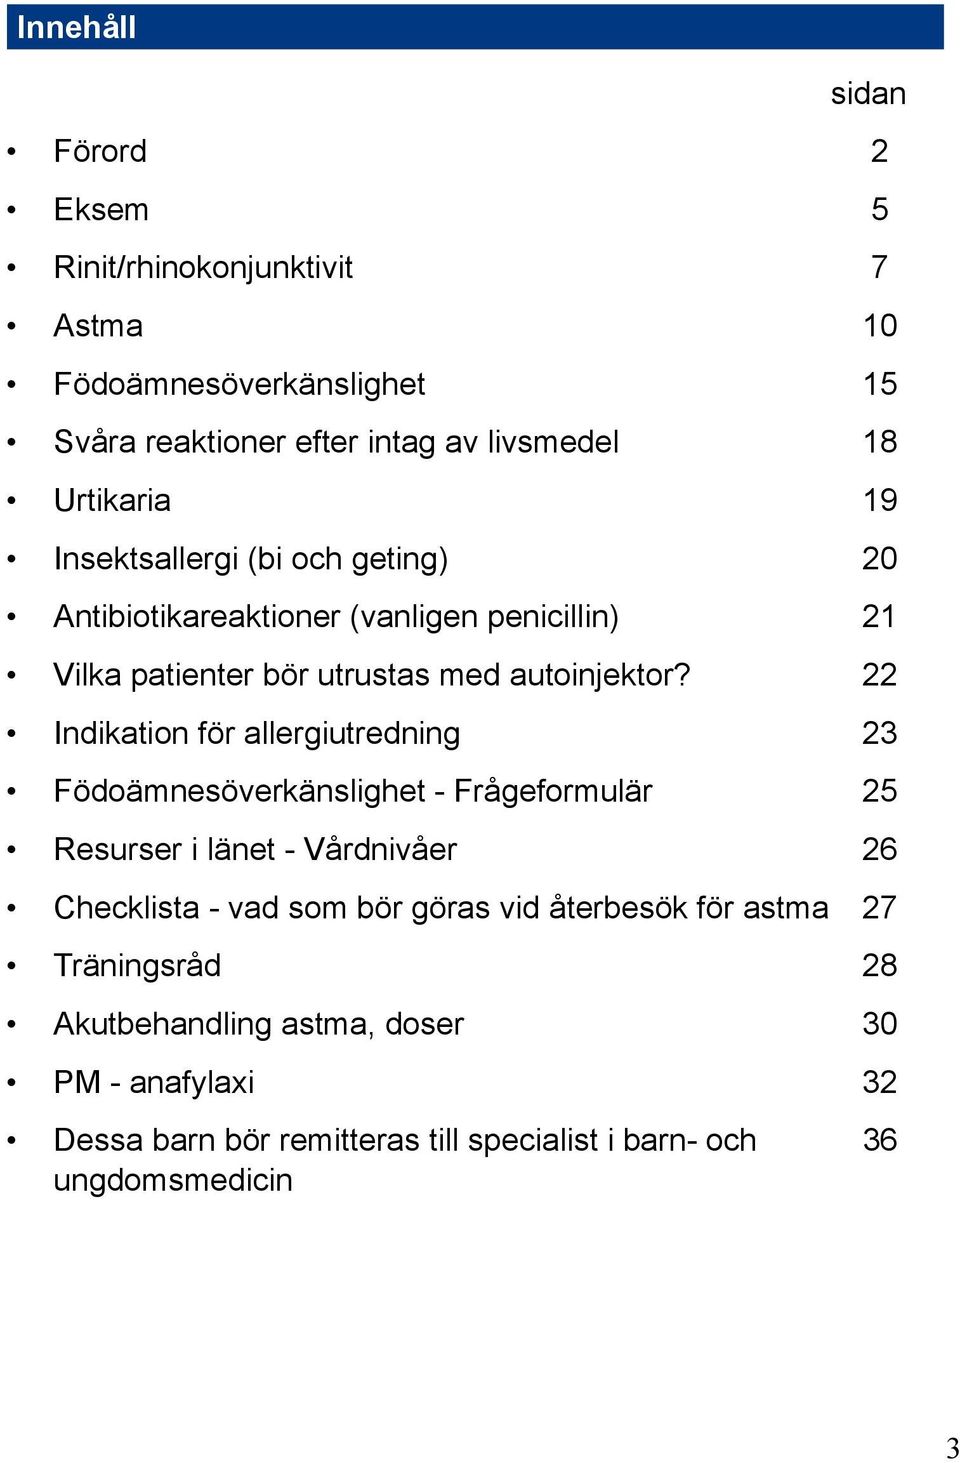 22 Indikation för allergiutredning 23 Födoämnesöverkänslighet - Frågeformulär 25 Resurser i länet - Vårdnivåer 26 Checklista - vad som bör göras